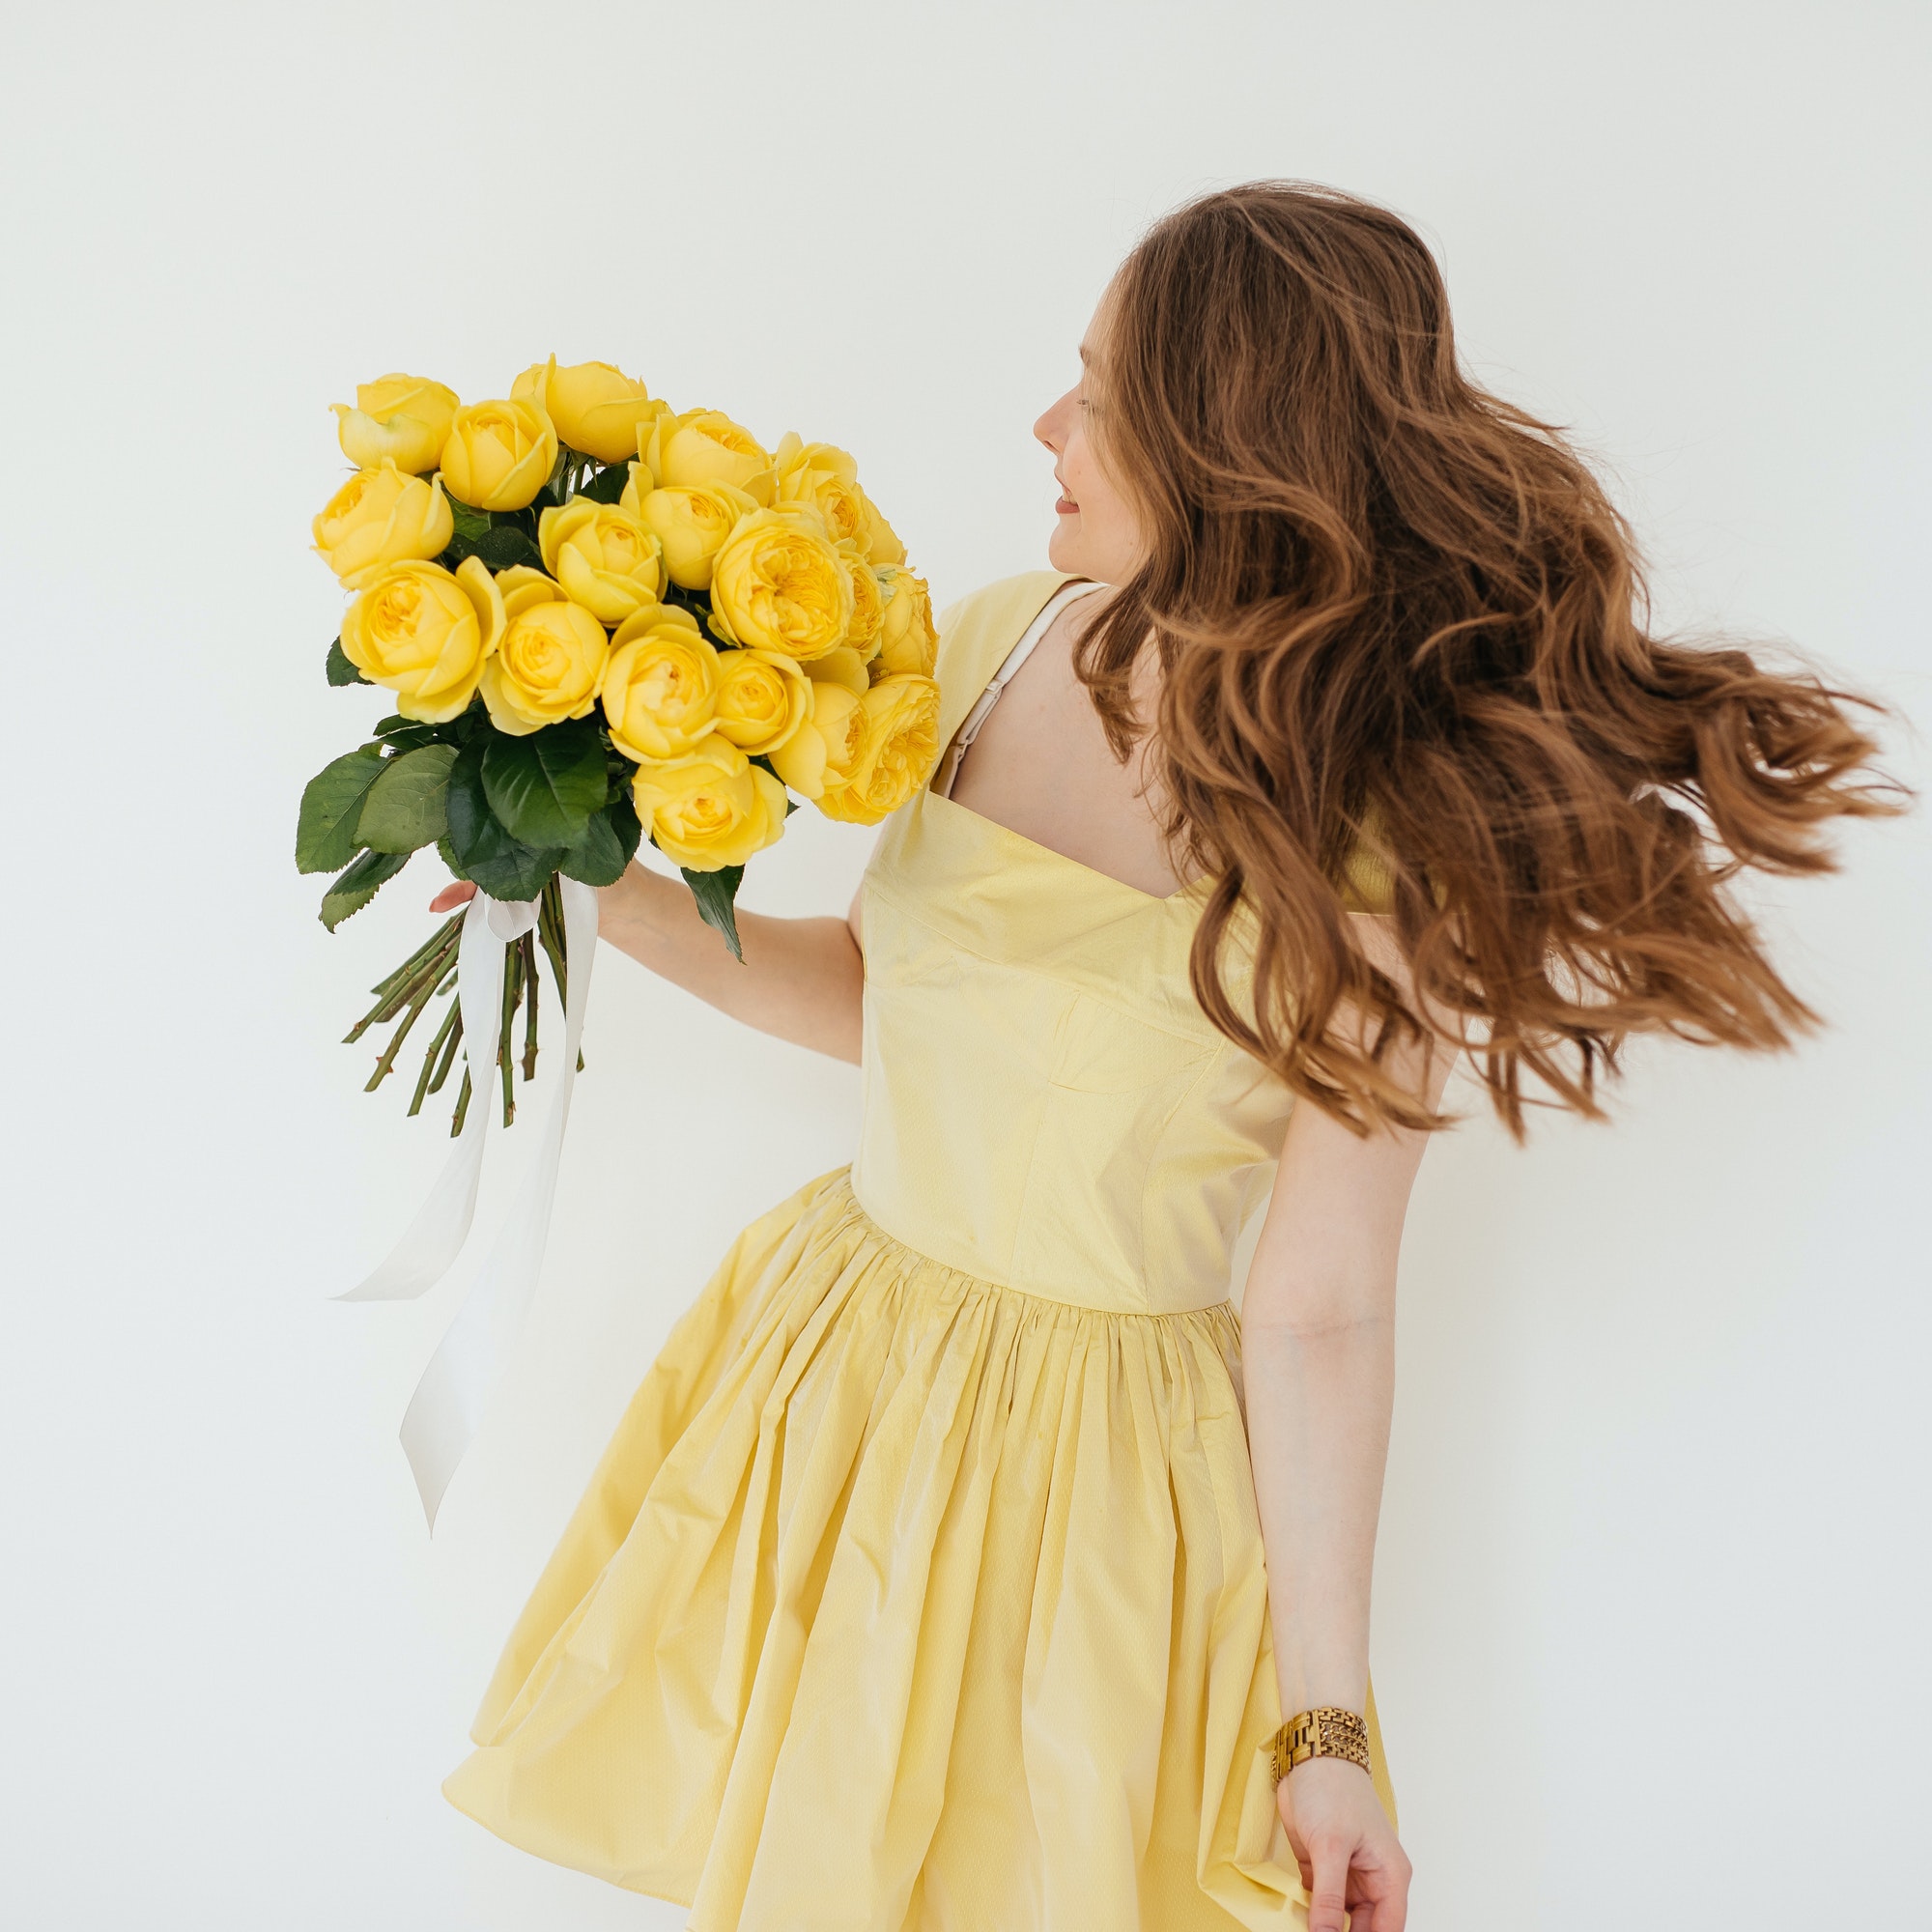 Żółta sukienka na wesele – najlepsze odcienie, fasony i stylizacje |  Saler.pl - Wyprzedaż i promocje modowe